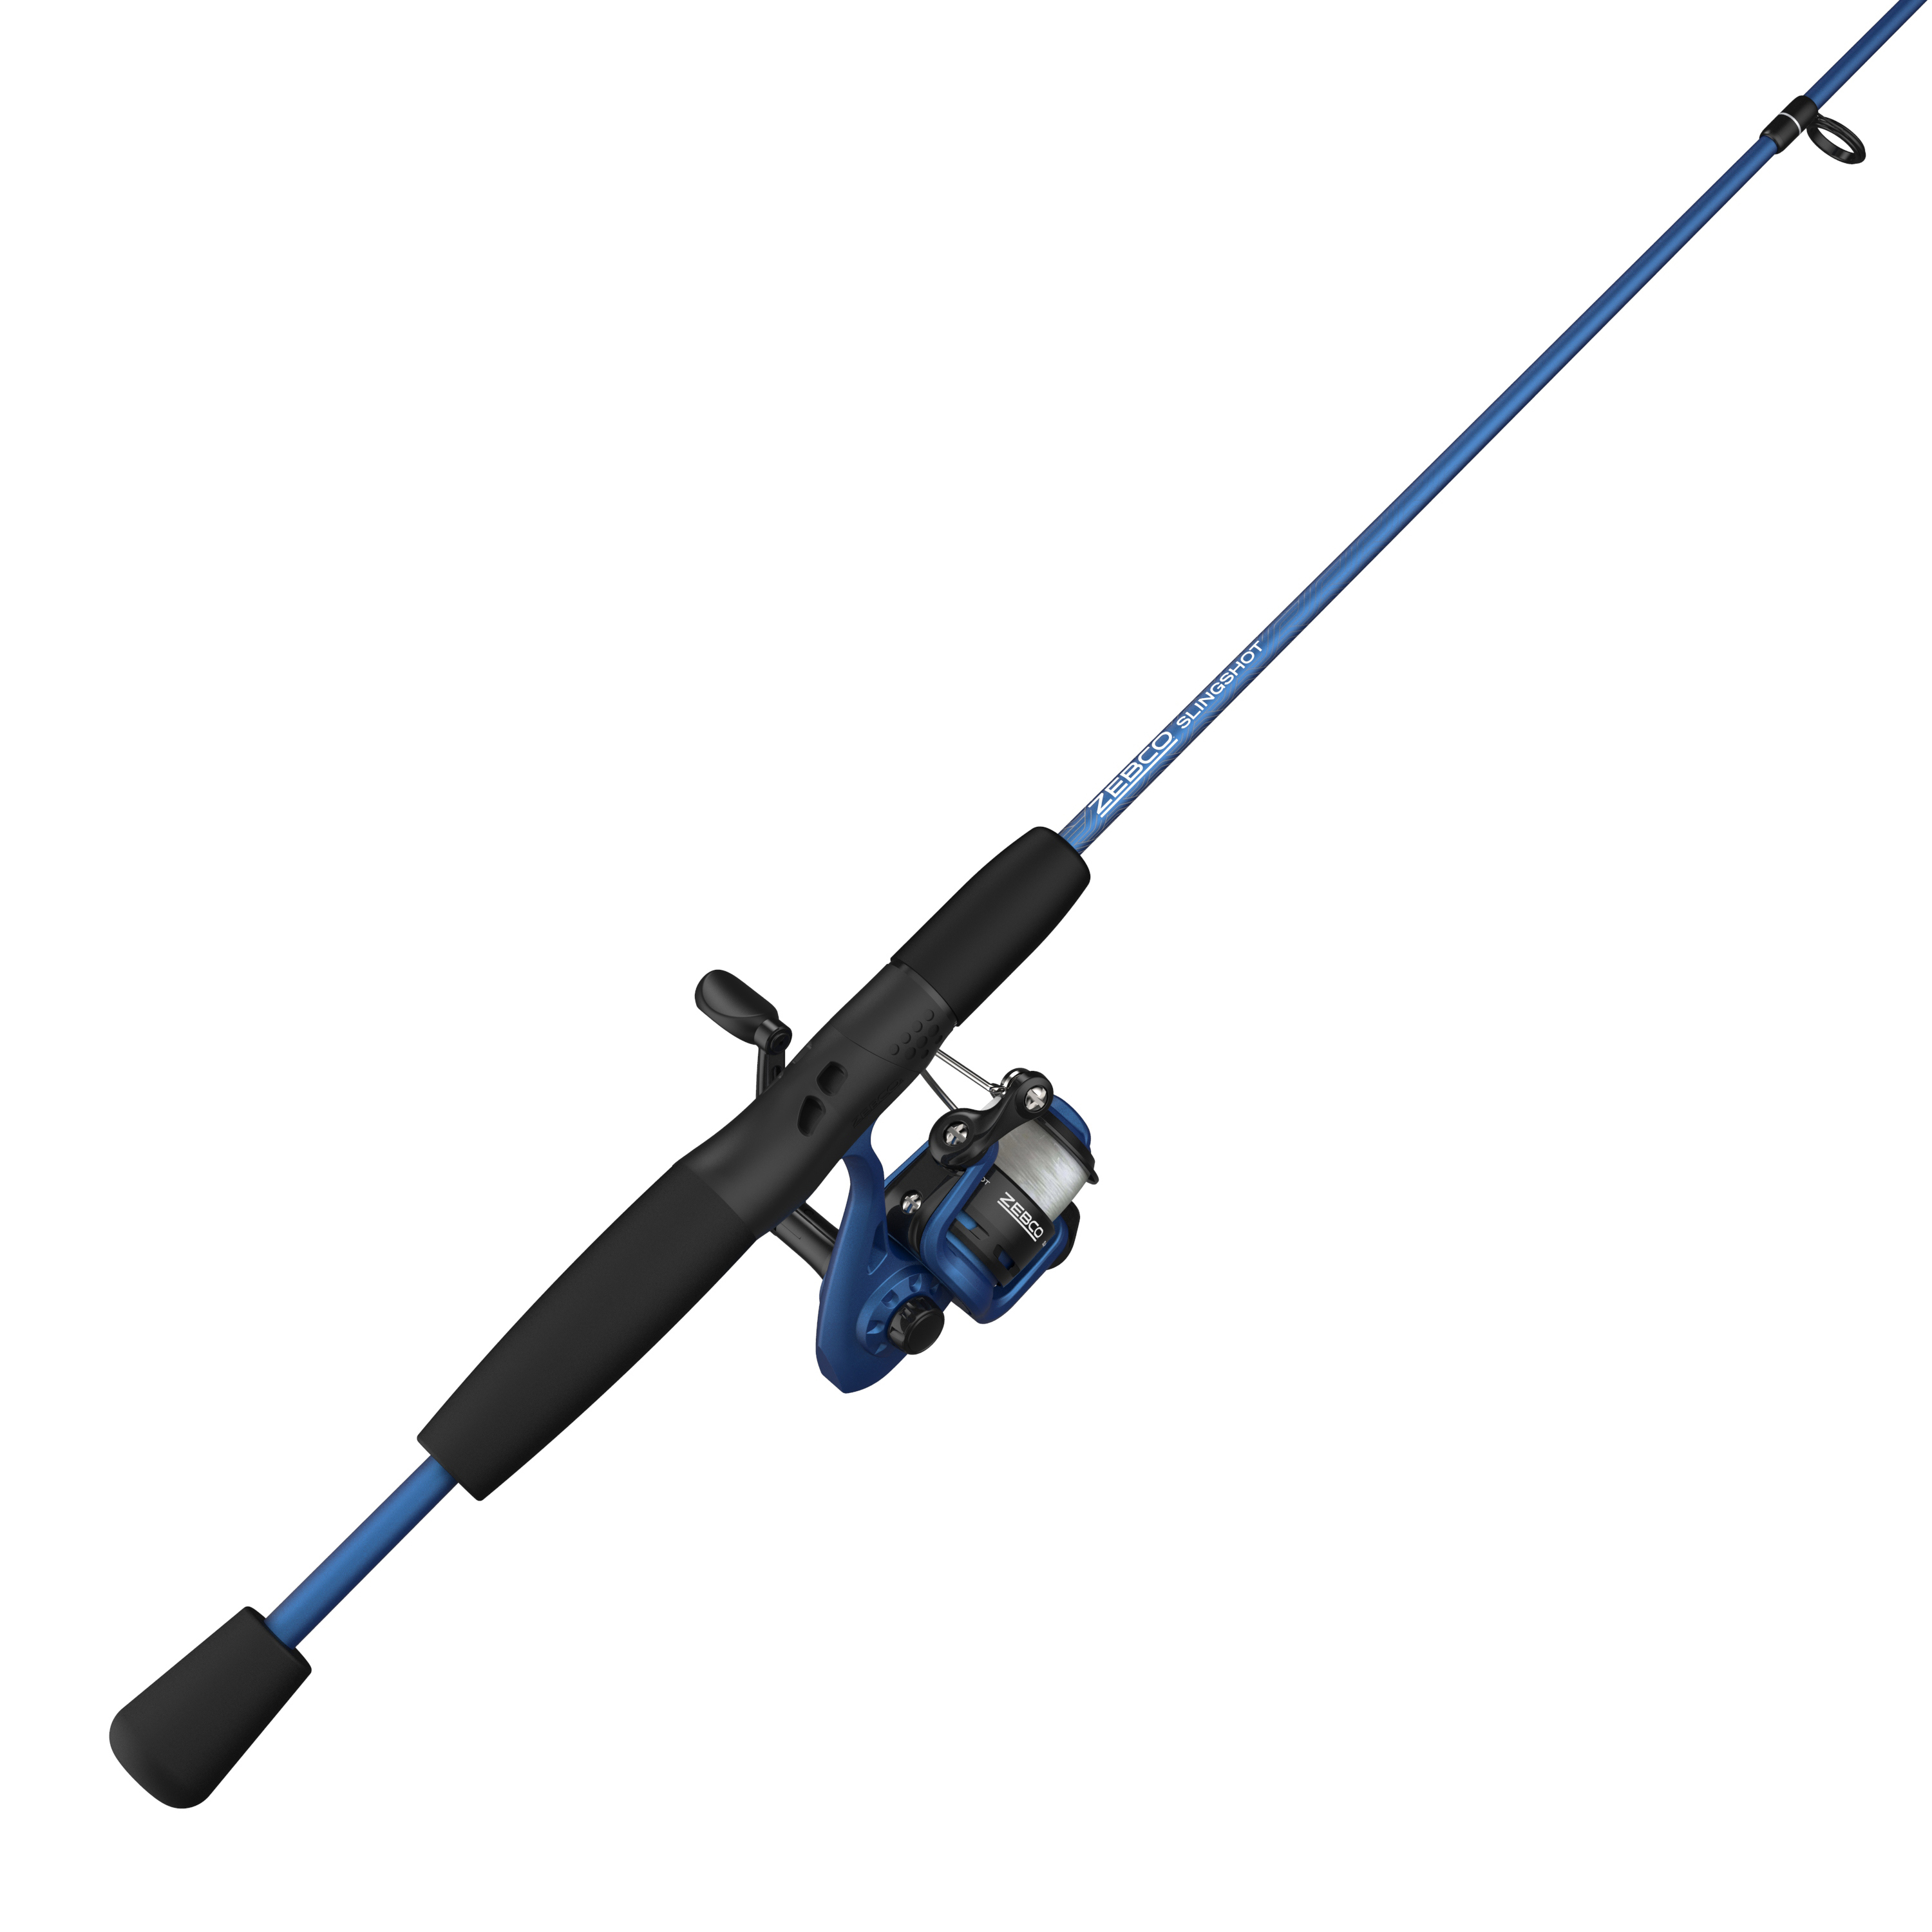 Baitcasting fishing rod ZEBCO DURA 5'6 and reel Quantum